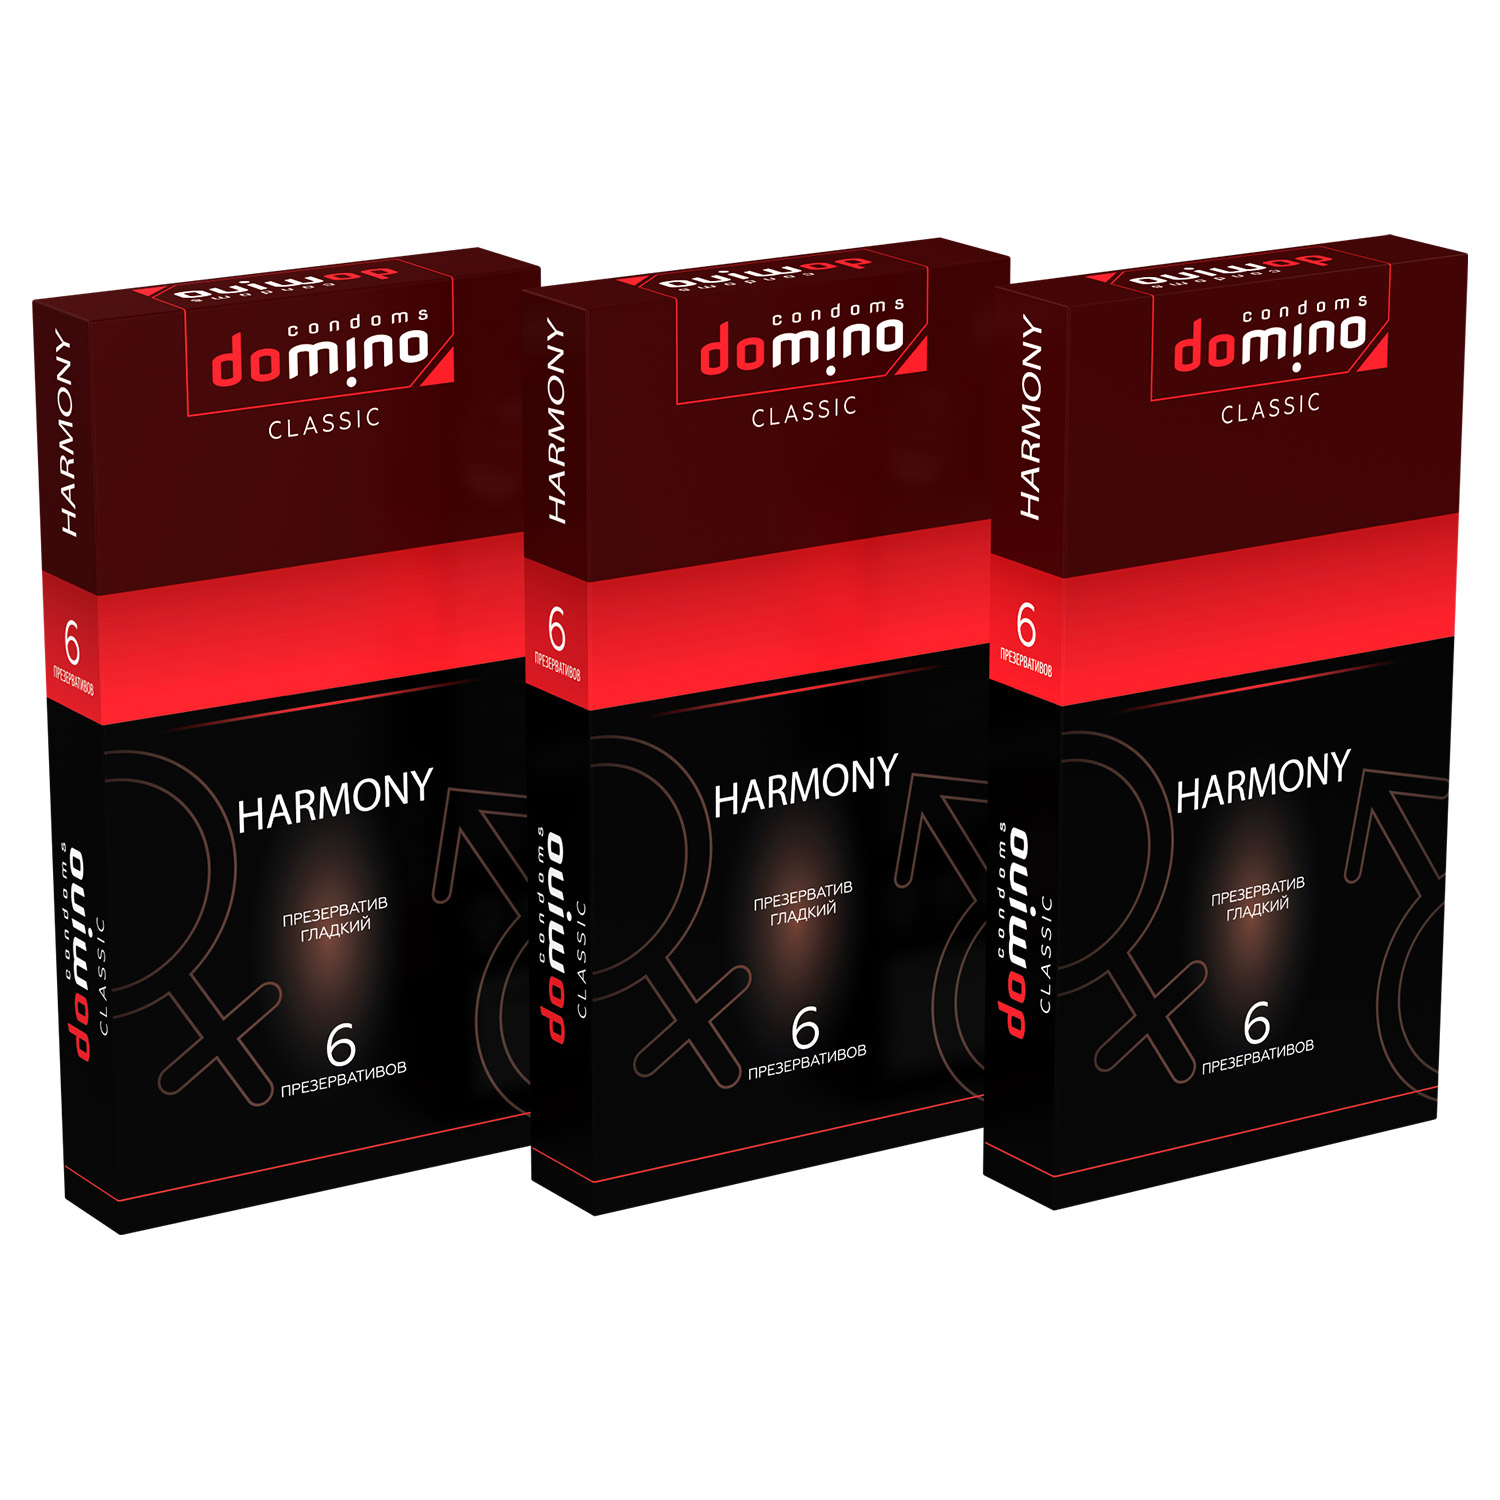 Презервативы Domino Classic Harmony 6 шт комплект из 3 пачек